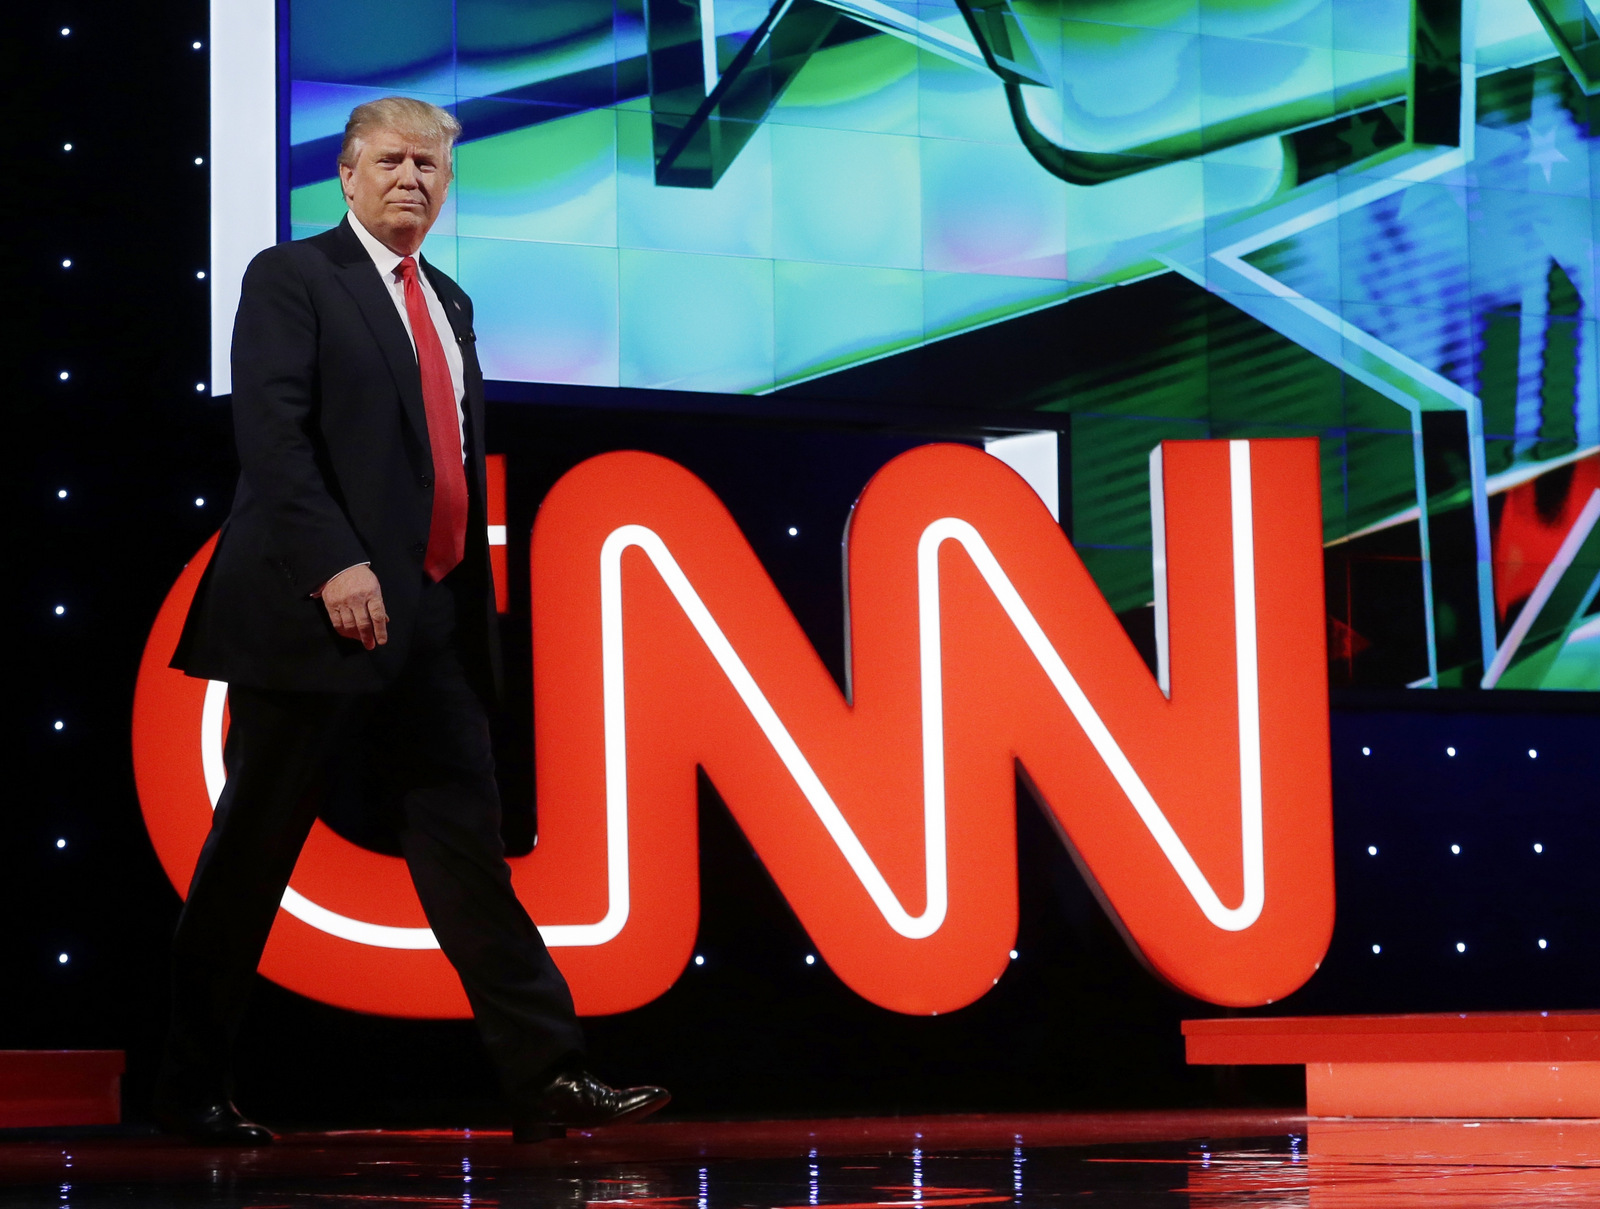 Дональд Трамп входит в зал для дебатов во время президентских дебатов республиканцев, спонсируемых CNN, 10 марта 2016 г. (AP / Alan Diaz)